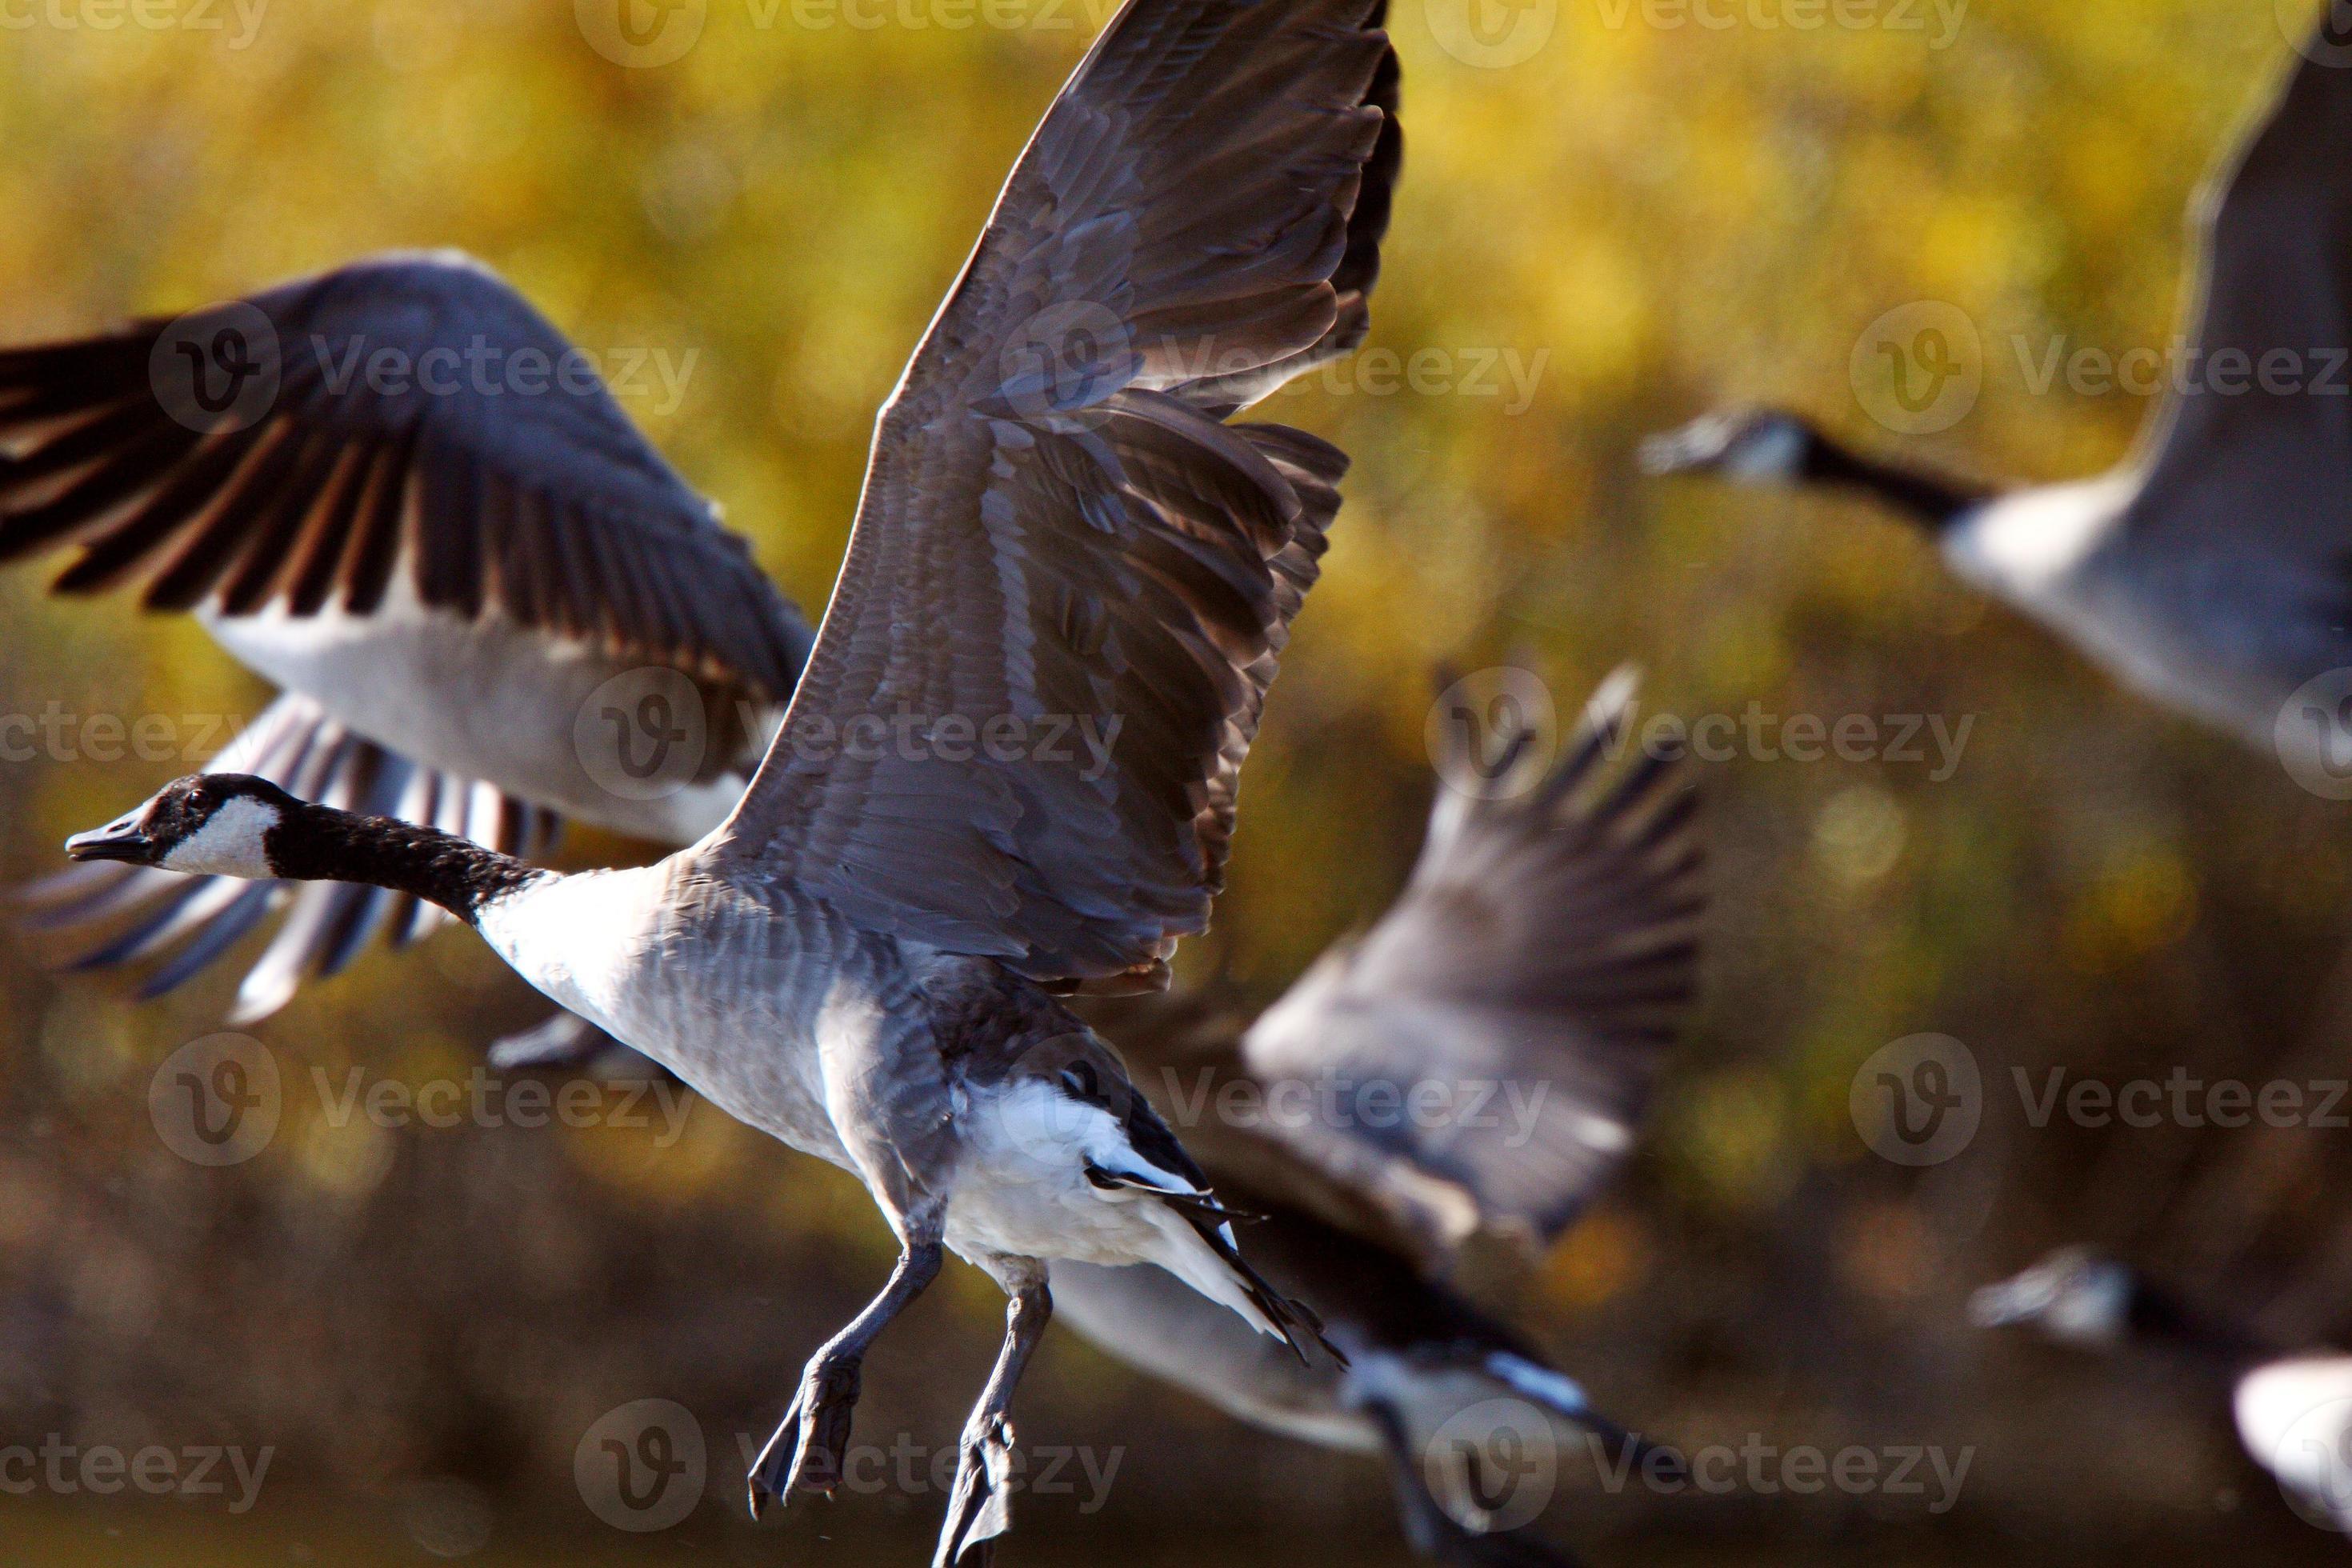 gansos de Canadá tomando vuelo desde el estanque de las praderas foto